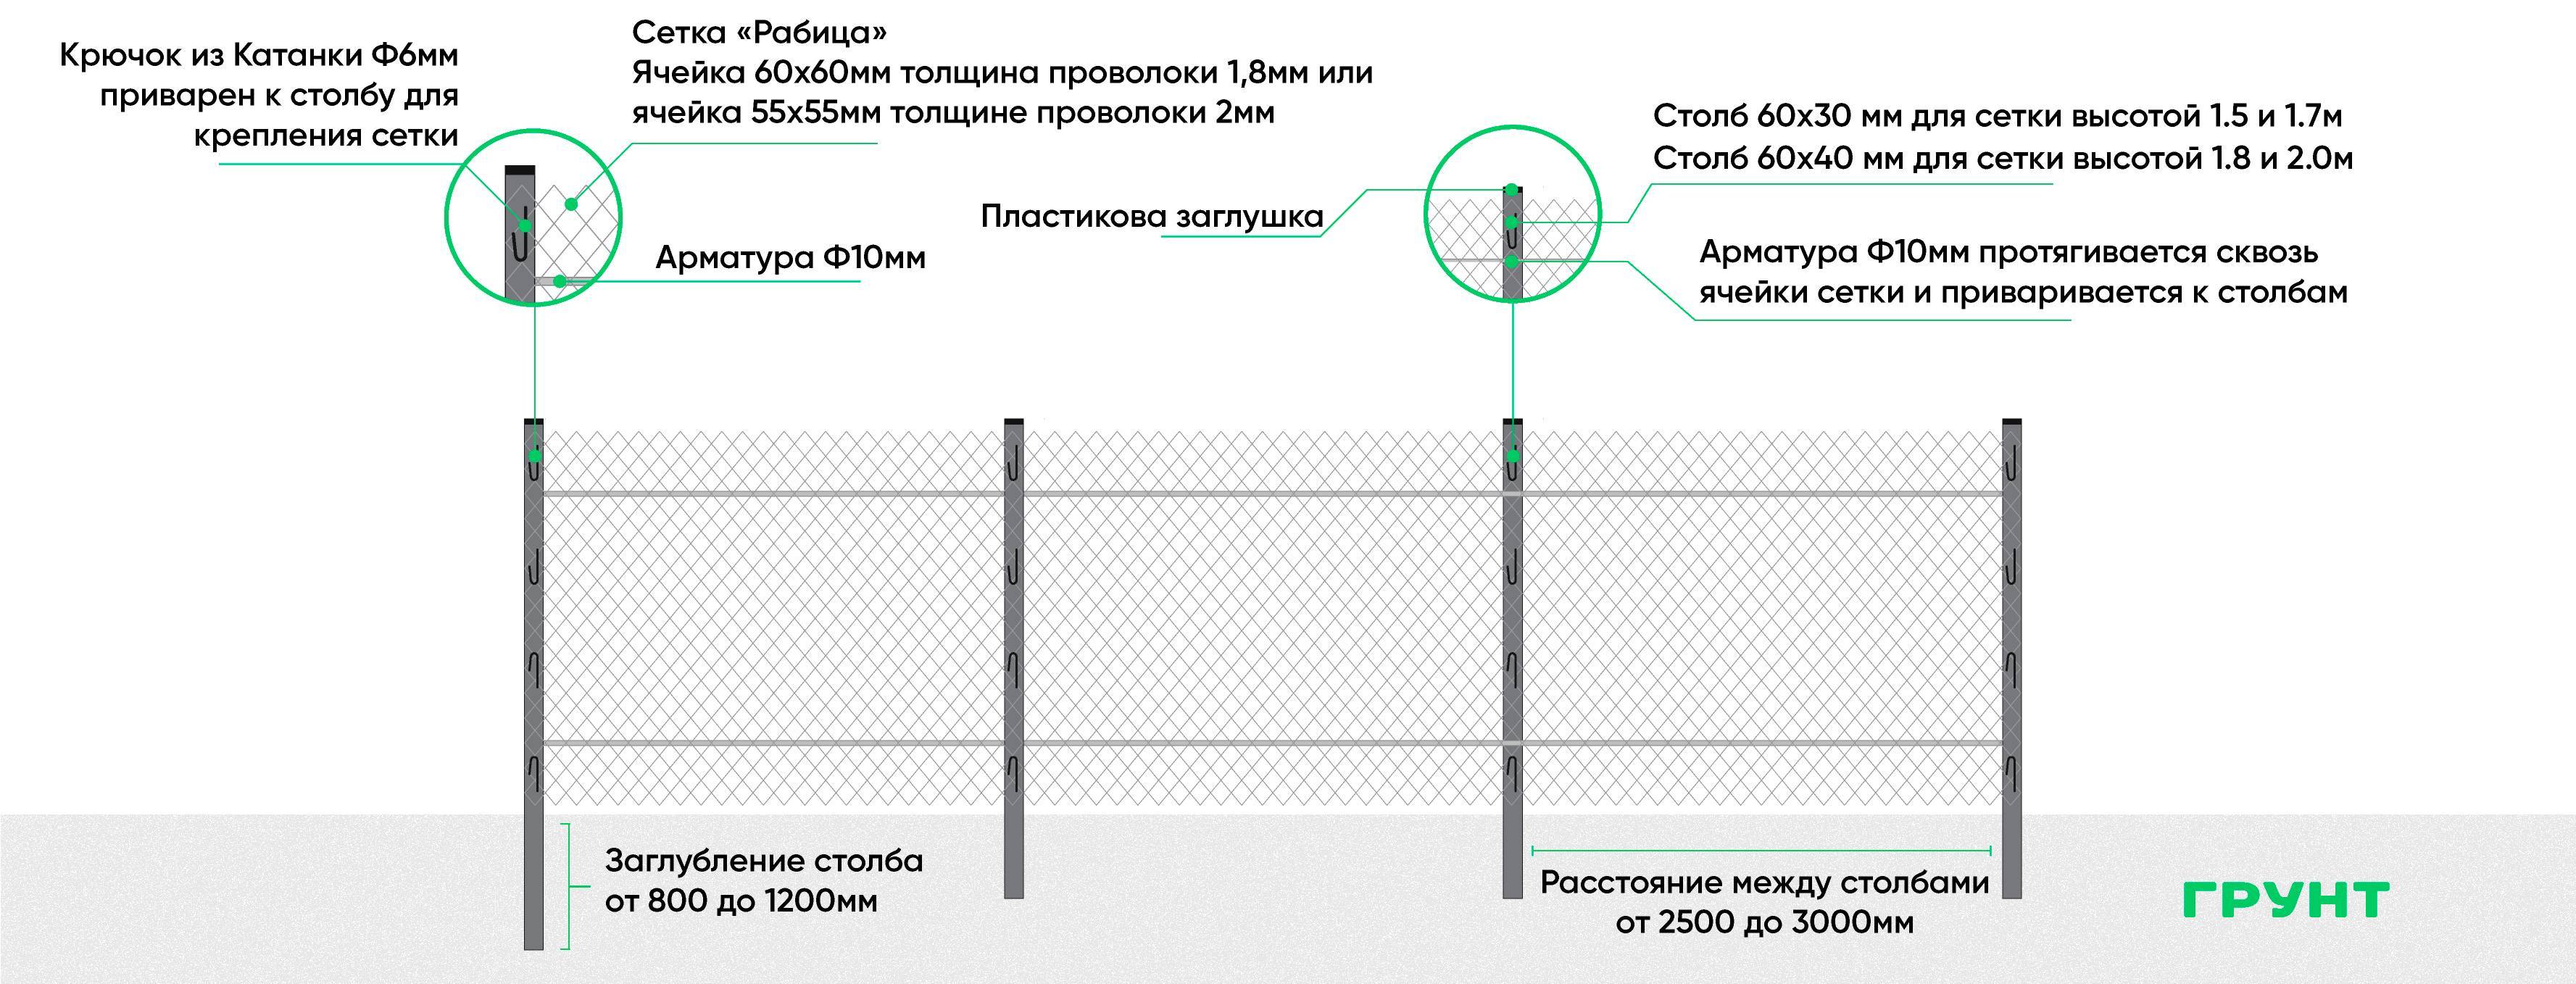 Забор из сетки рабицы своими руками - пошаговая инструкция с фото, схемами и видео